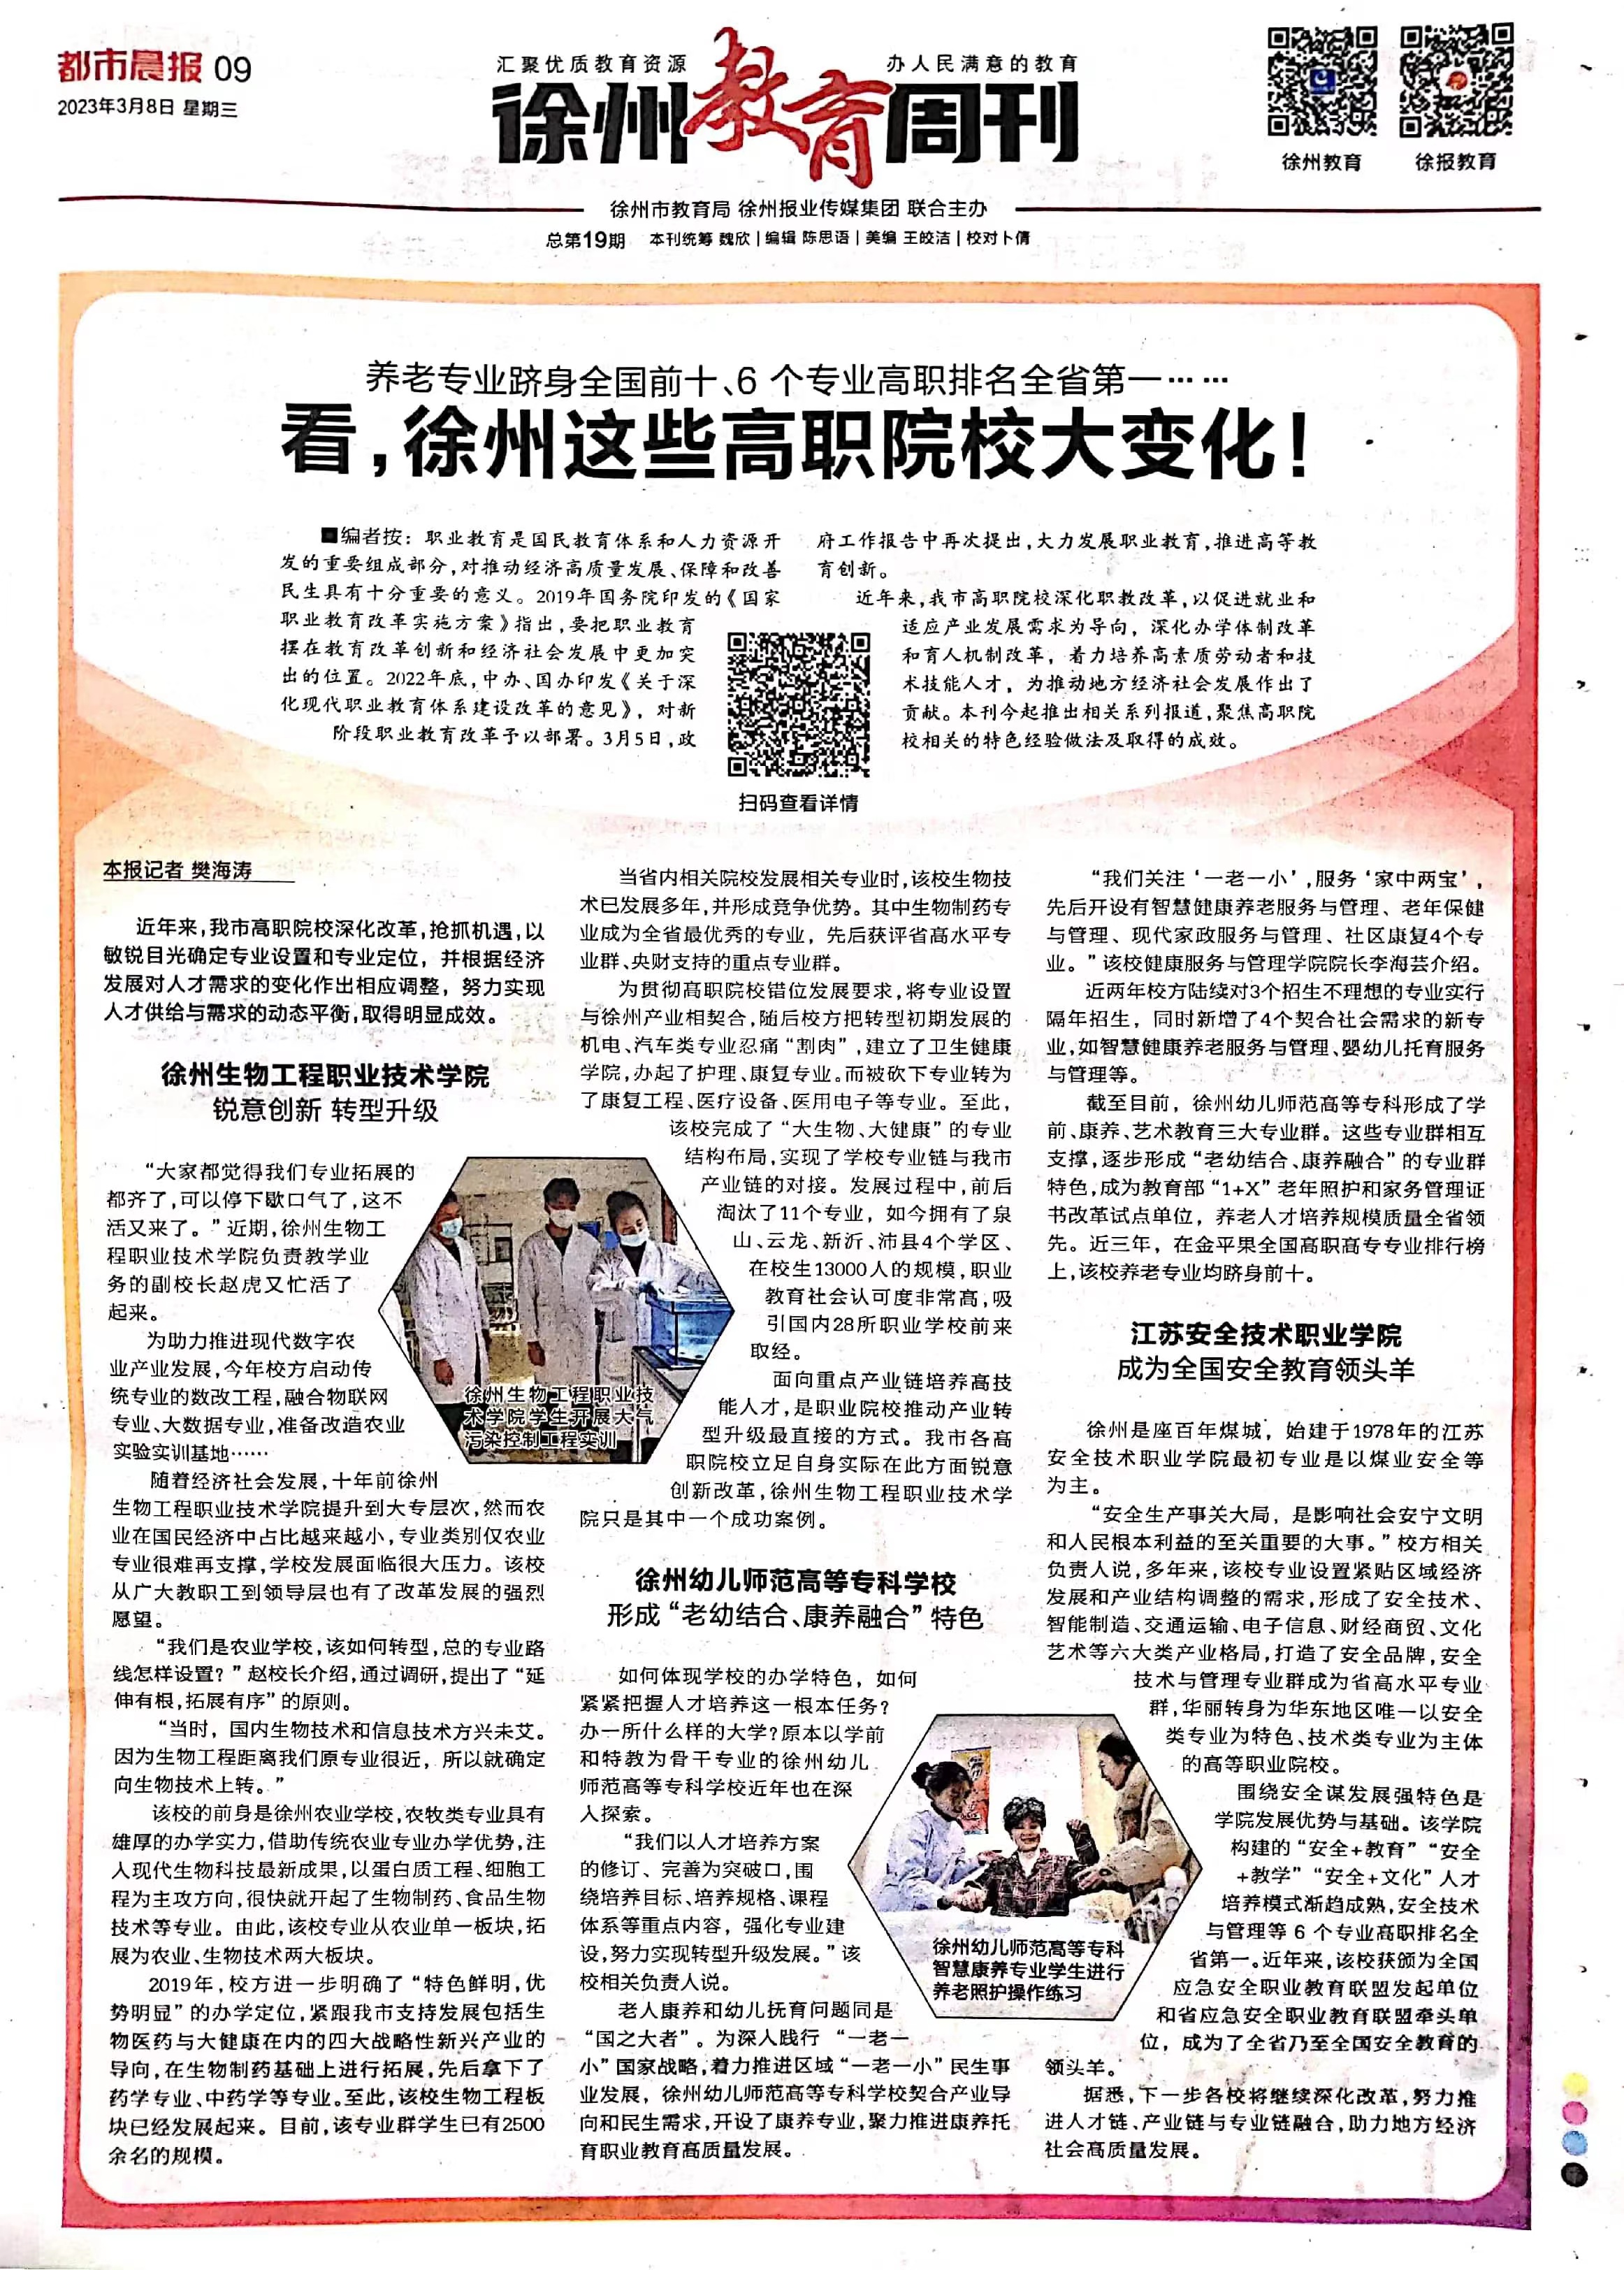 【都市晨报】看，徐州这些高职院校大变化！徐州生物工程职业技术学院 锐意创新转型升级